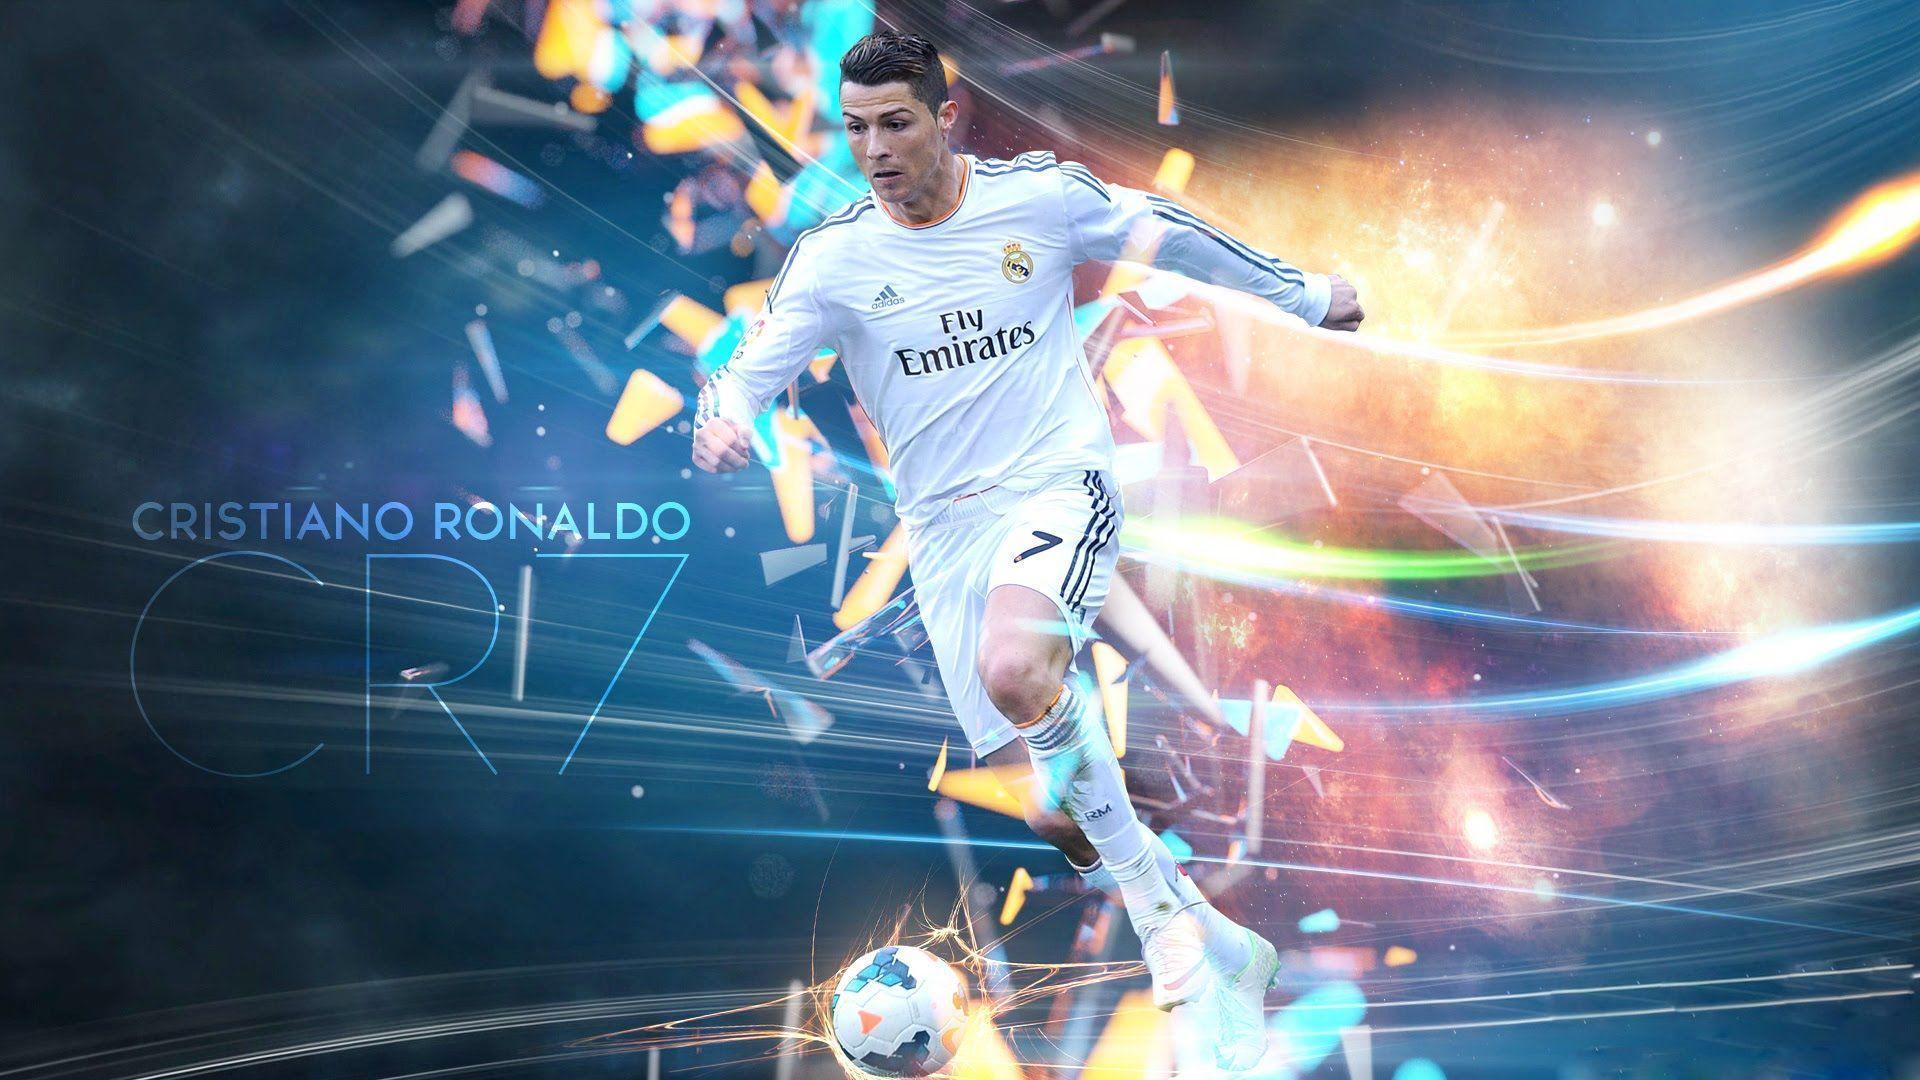 Cristiano Ronaldo Full HD Wallpaper 2016 For download